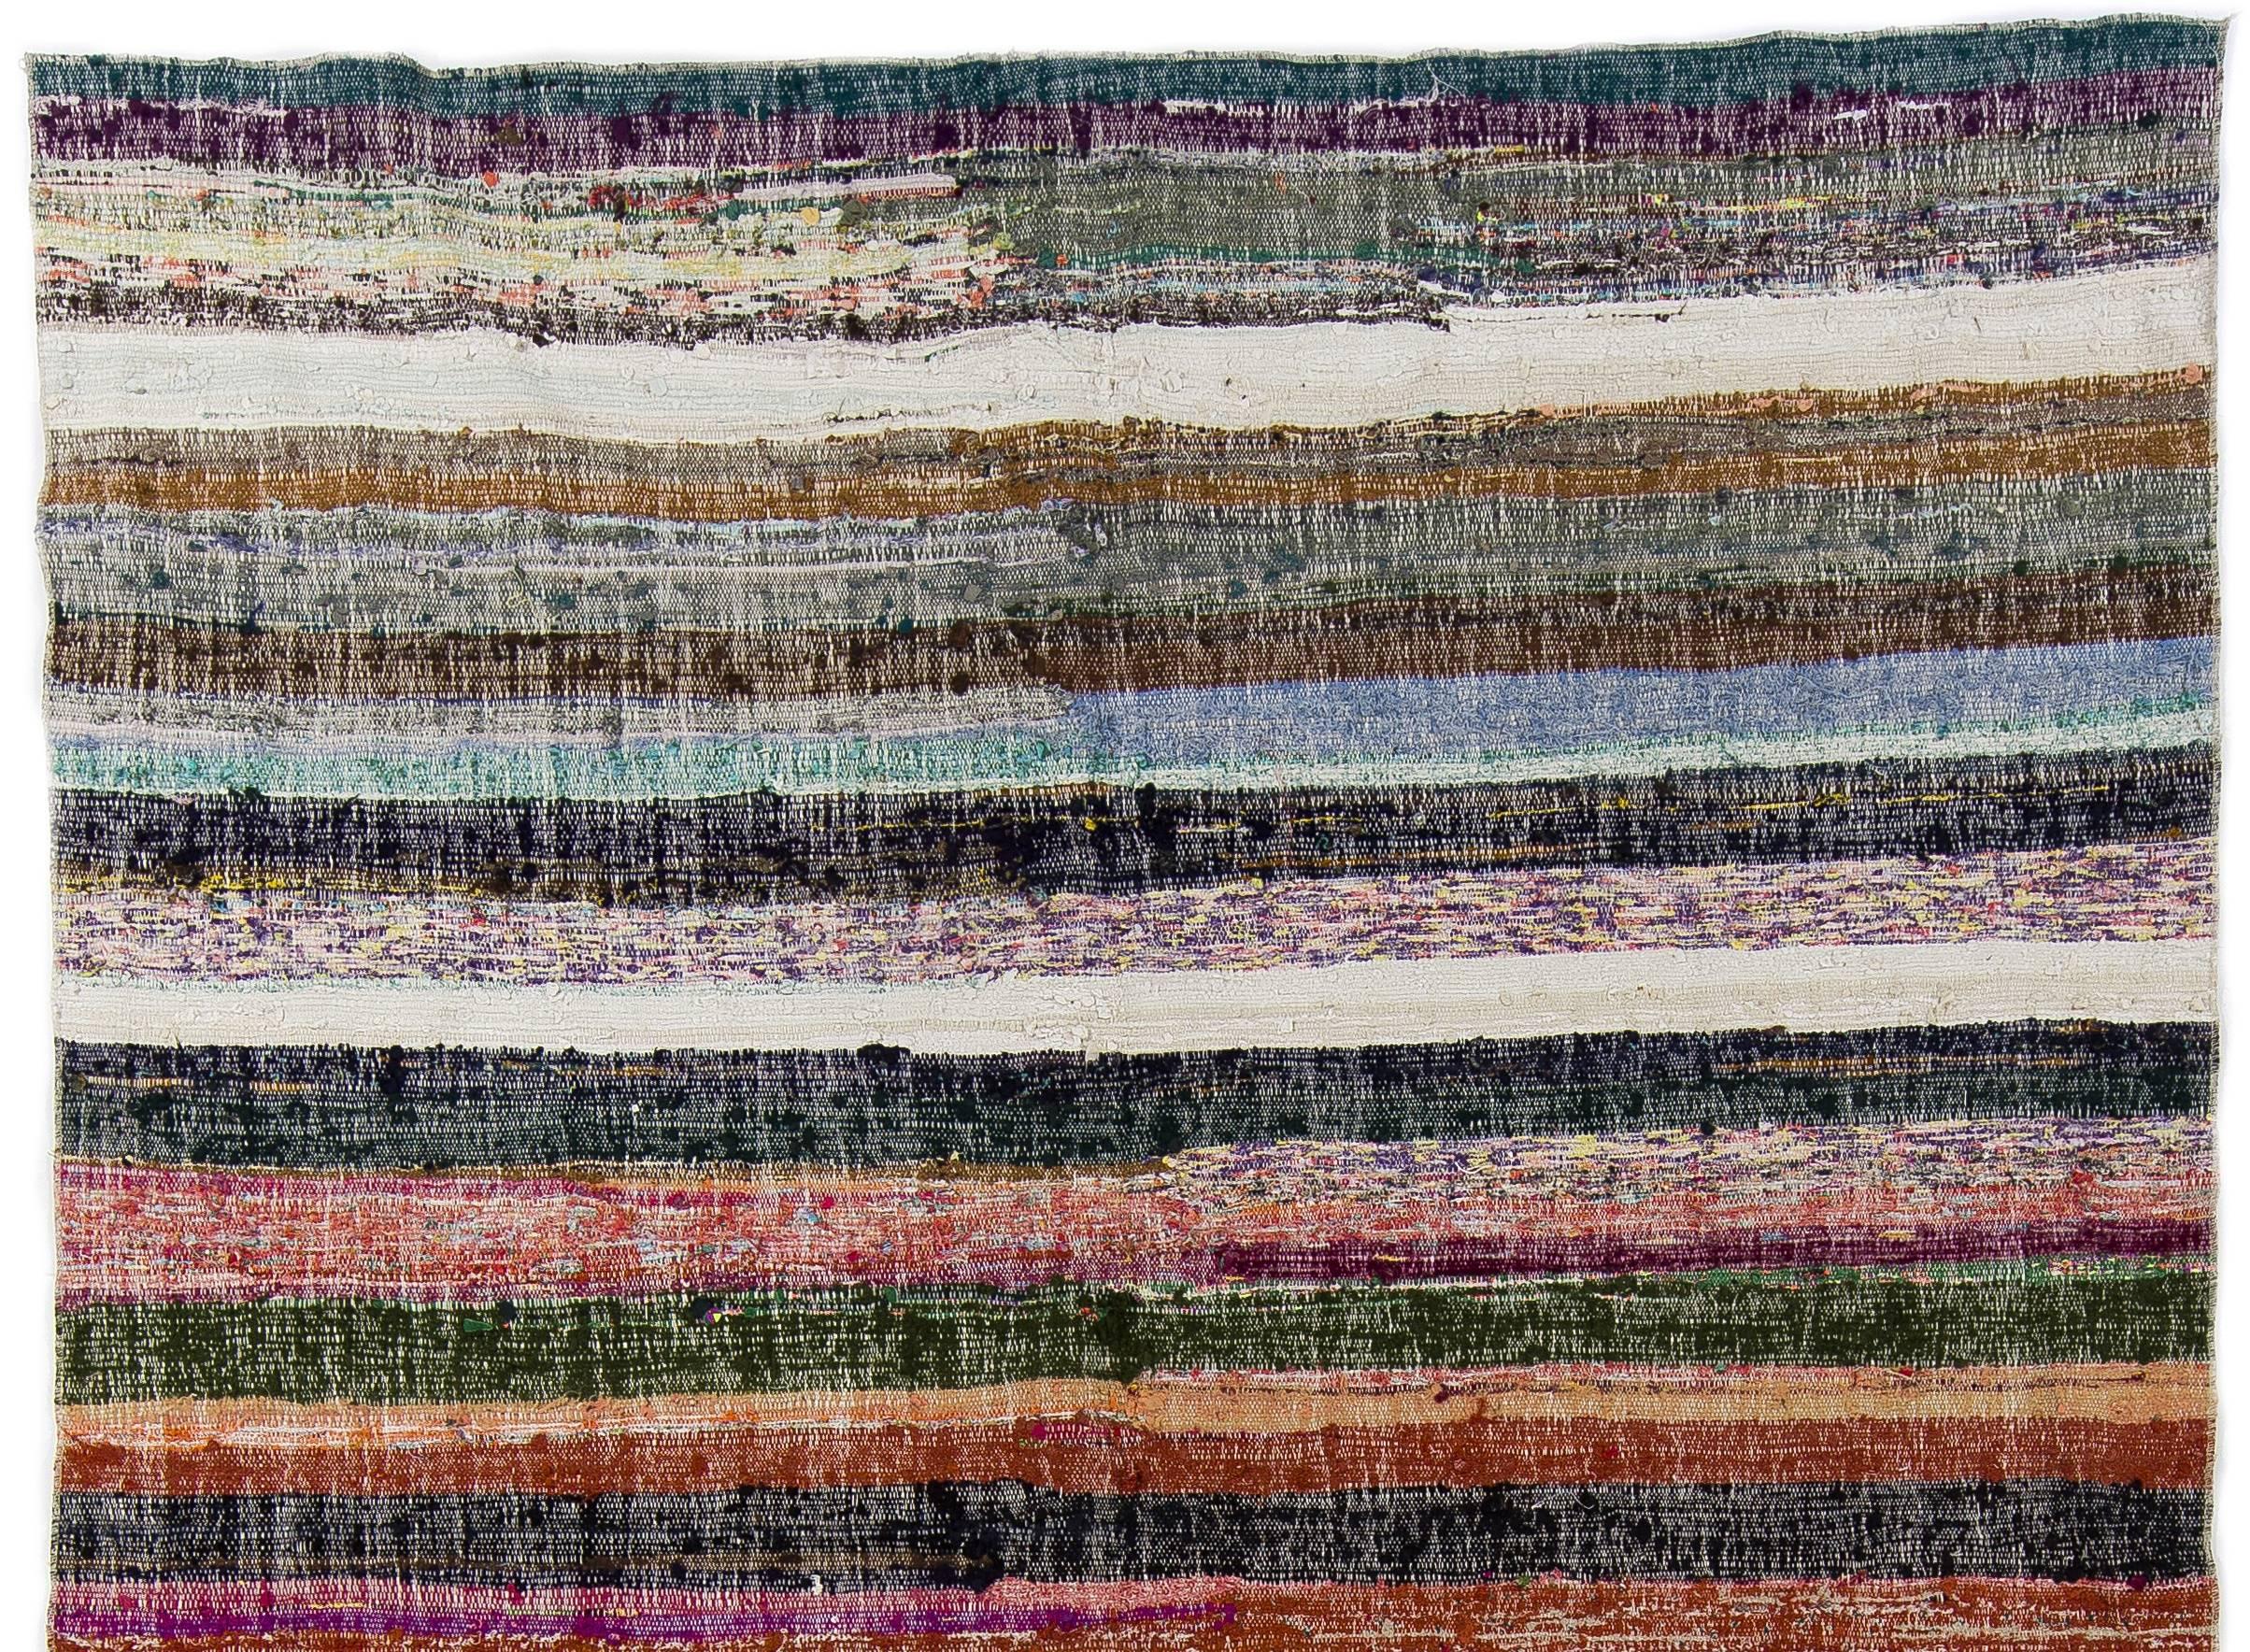 Hand-Woven Colorful Turkish Cotton Rag Rug